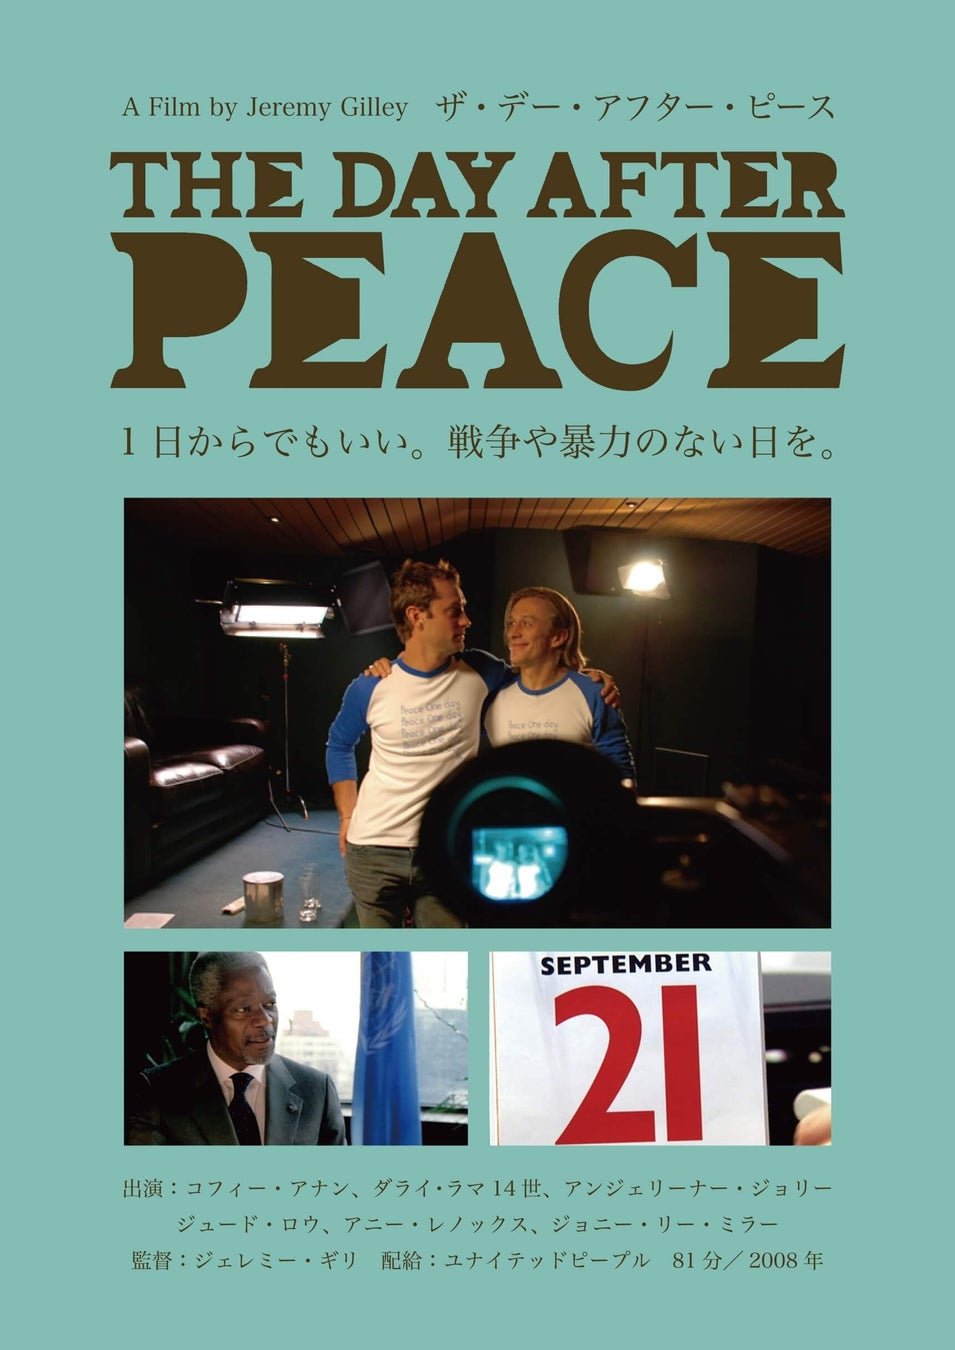 一般財団法人PEACE DAYと連携し、国際平和を願う“Peaceday event”を開催@haishop cafe横浜店のサブ画像5